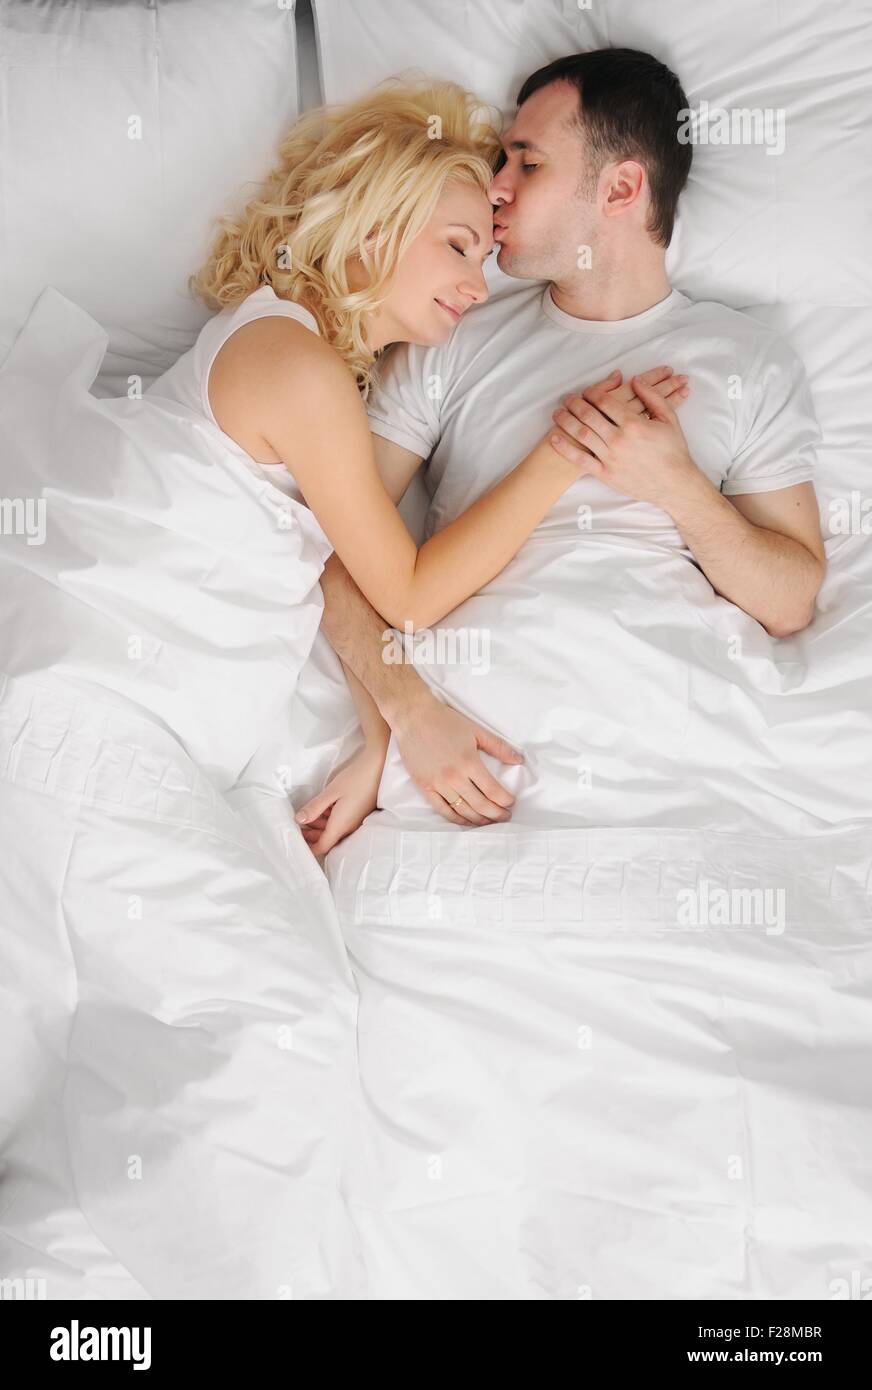 Что делать жене в постели. Молодая пара в постели. Красивые пары в постели. Молодая пара в кровати. Дорогой возьми меня.